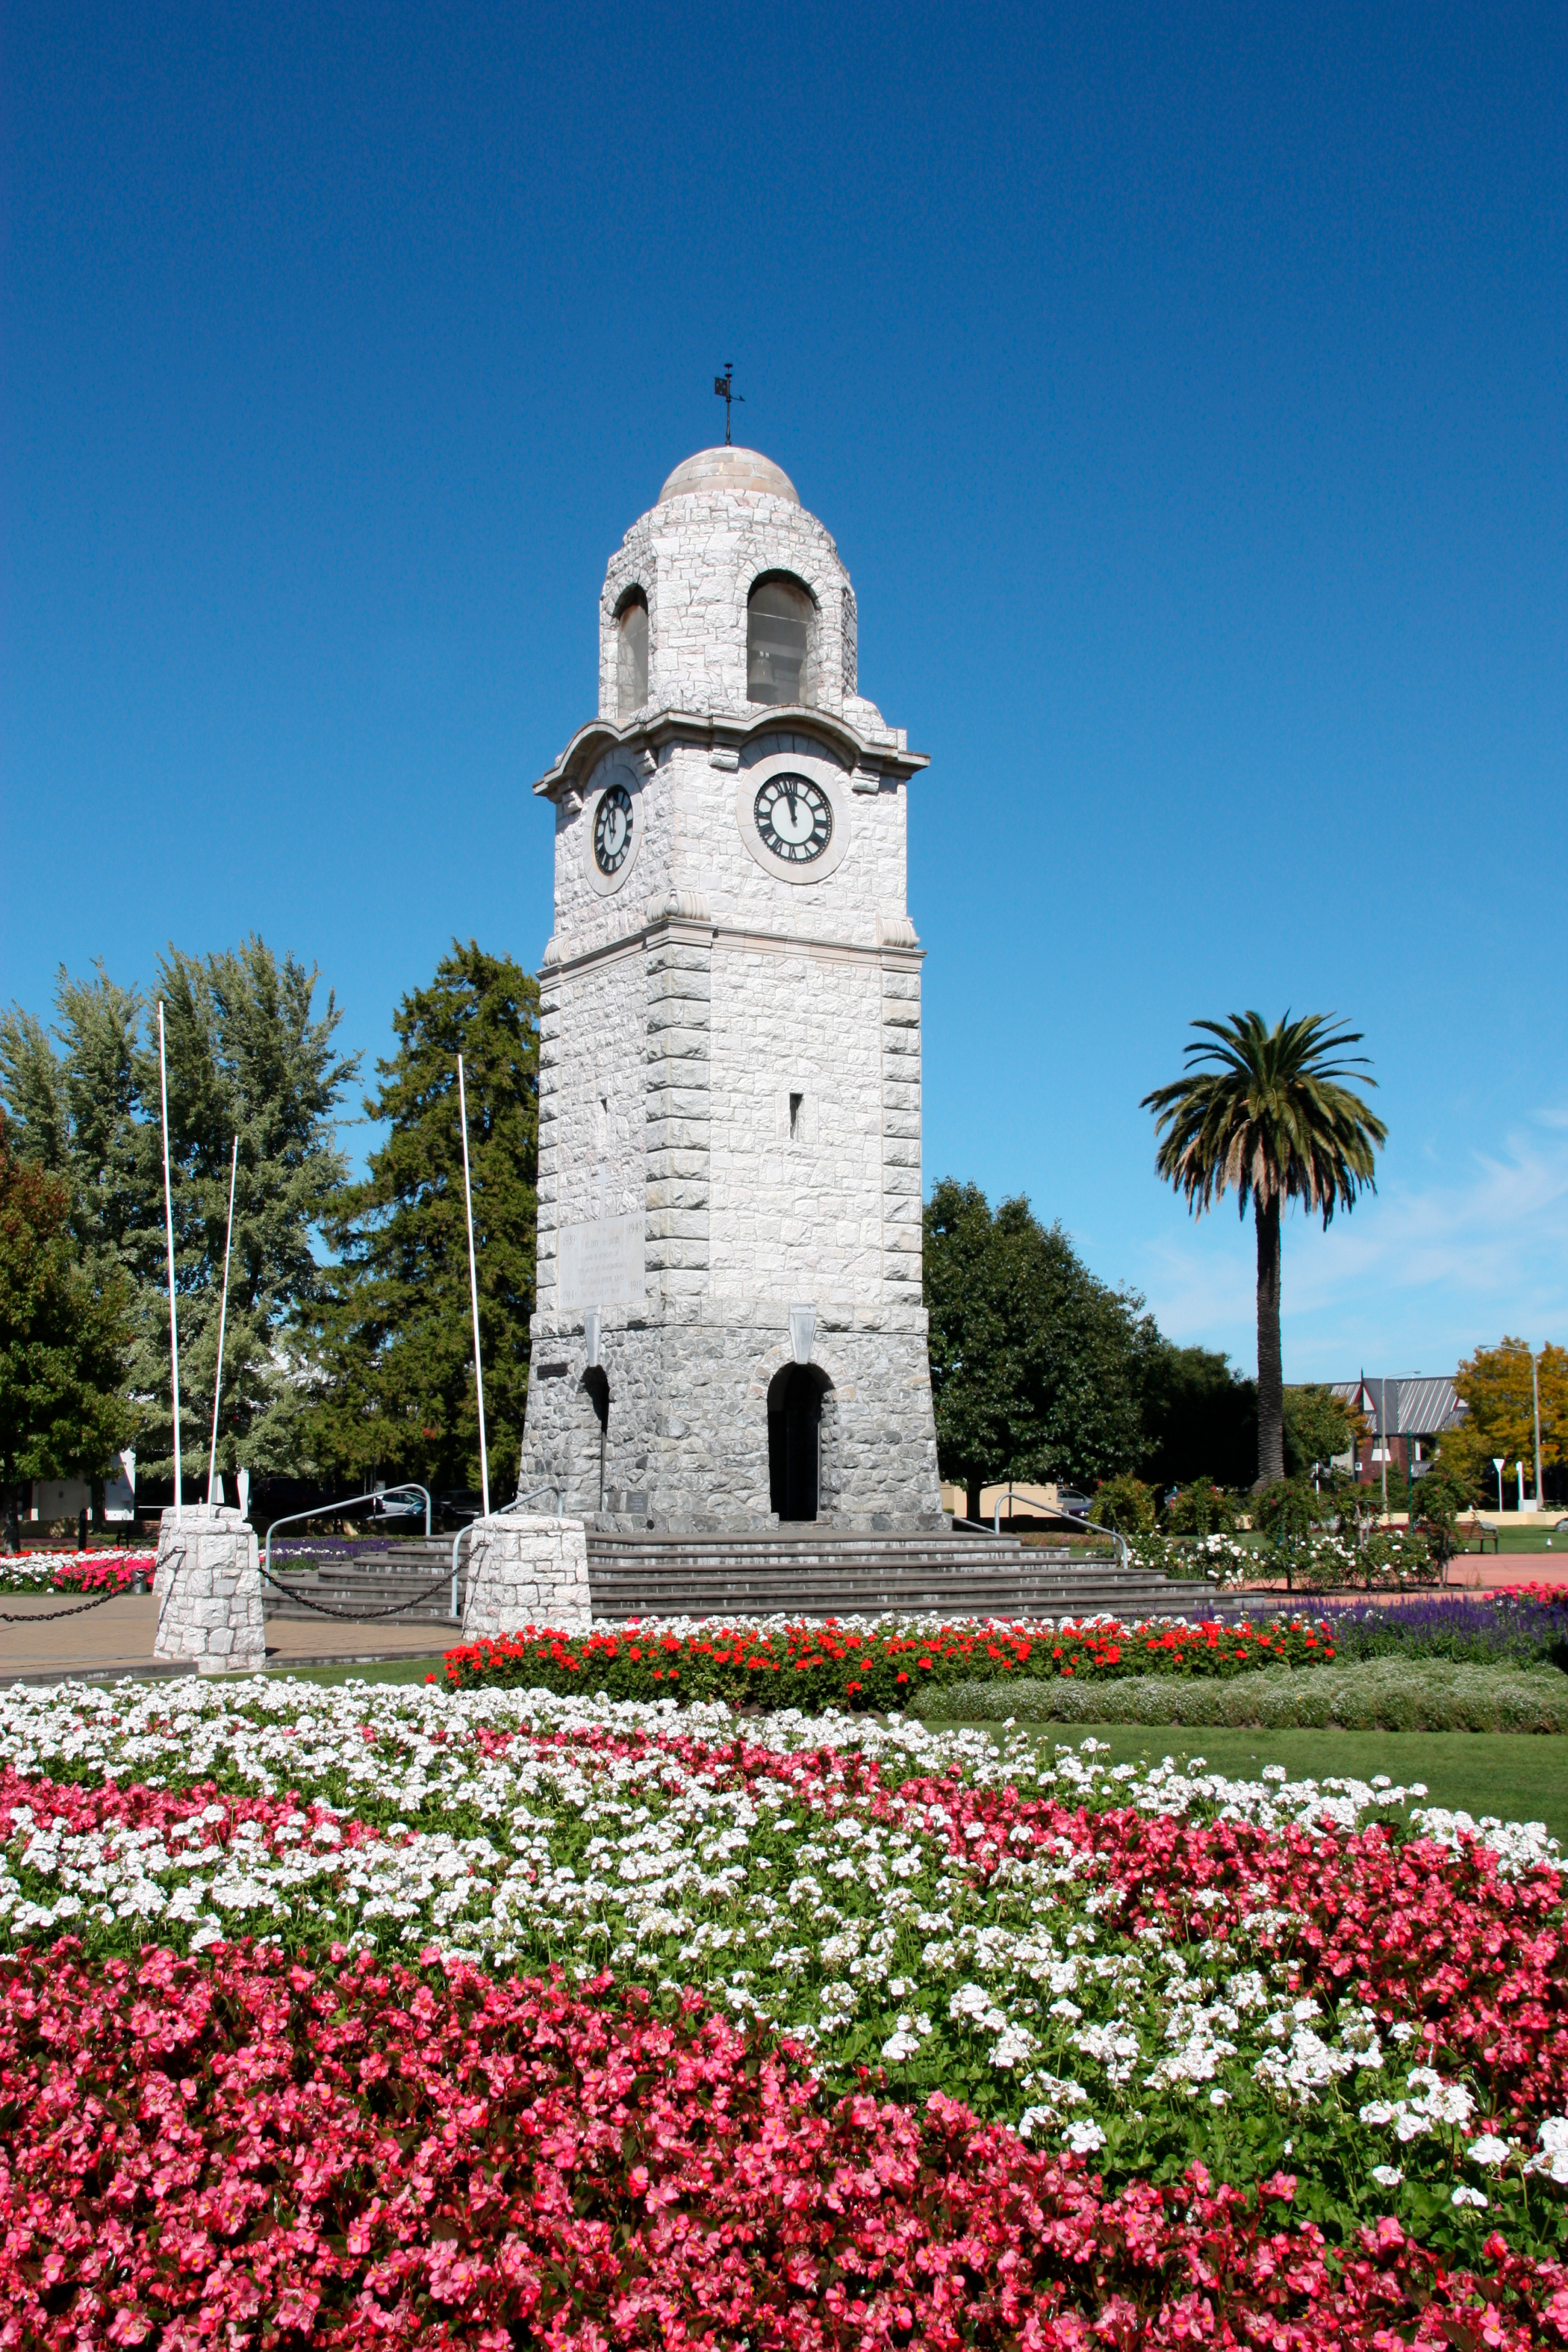 Blenheim clock tower